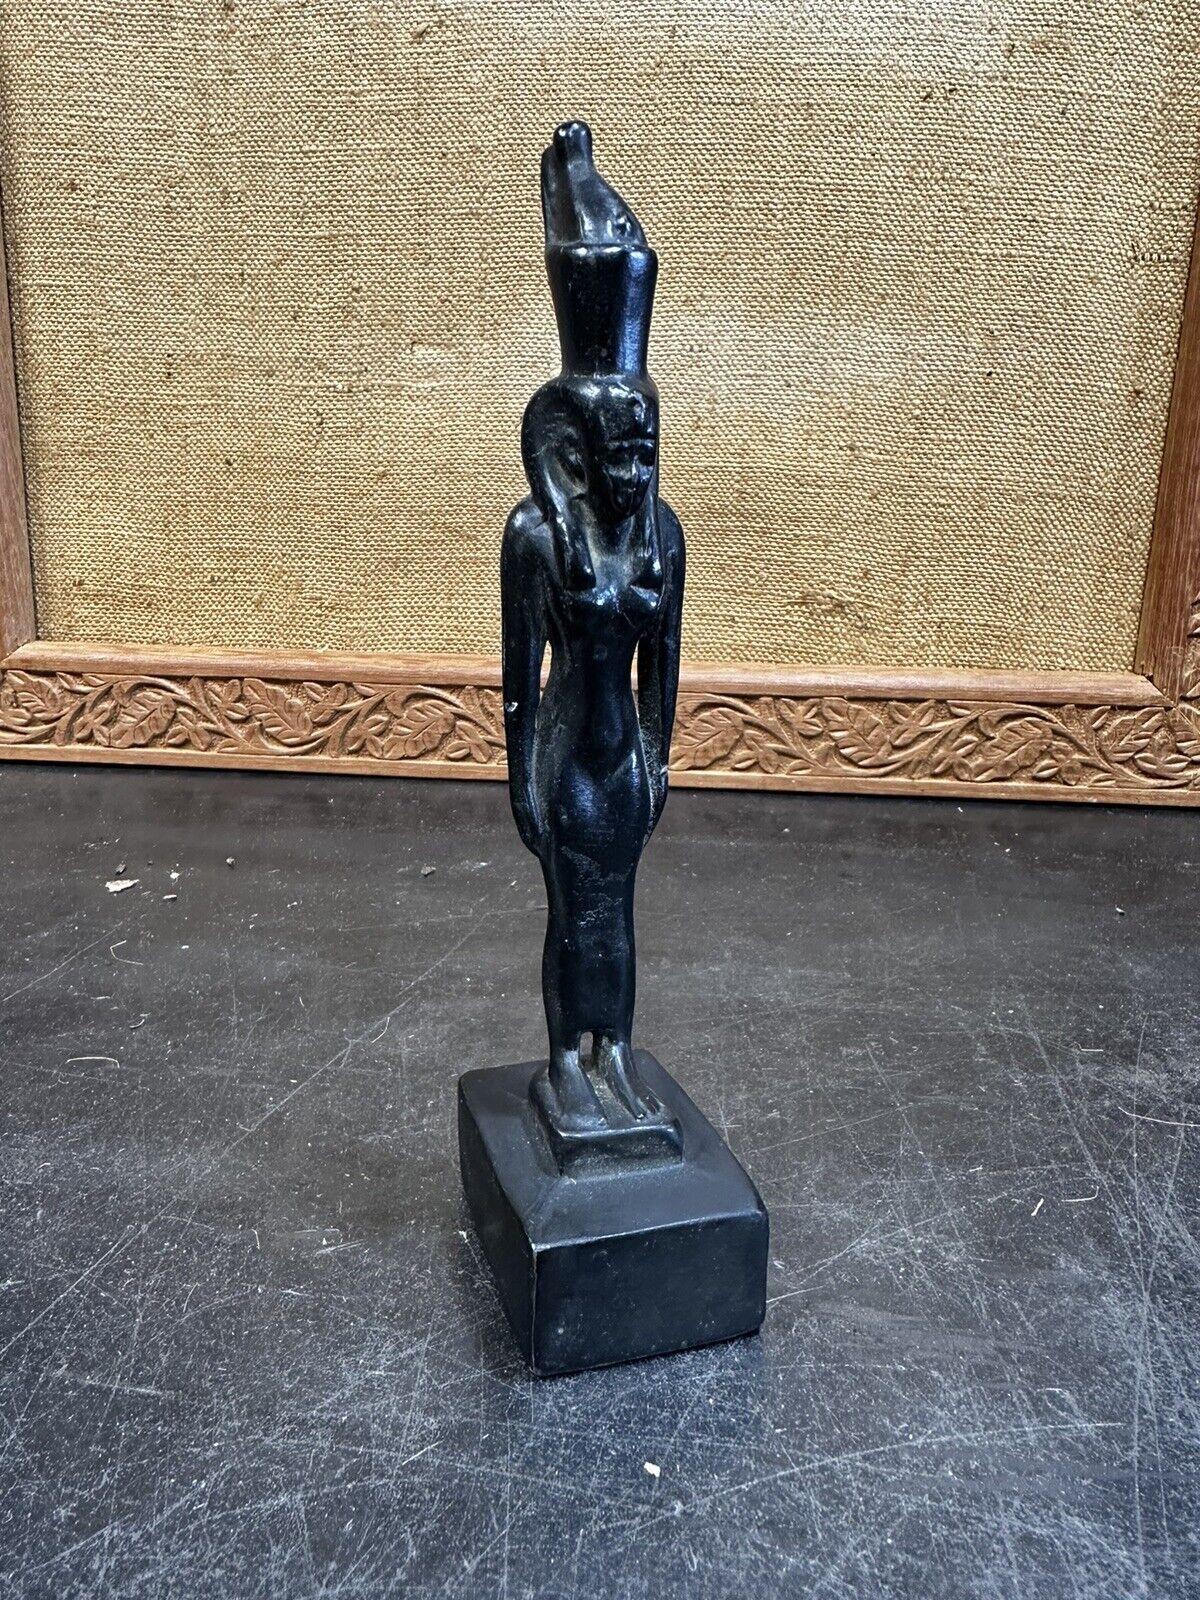 1920’s Pot Metal Amun Sculpture Standing Man With Headdress Egyptian